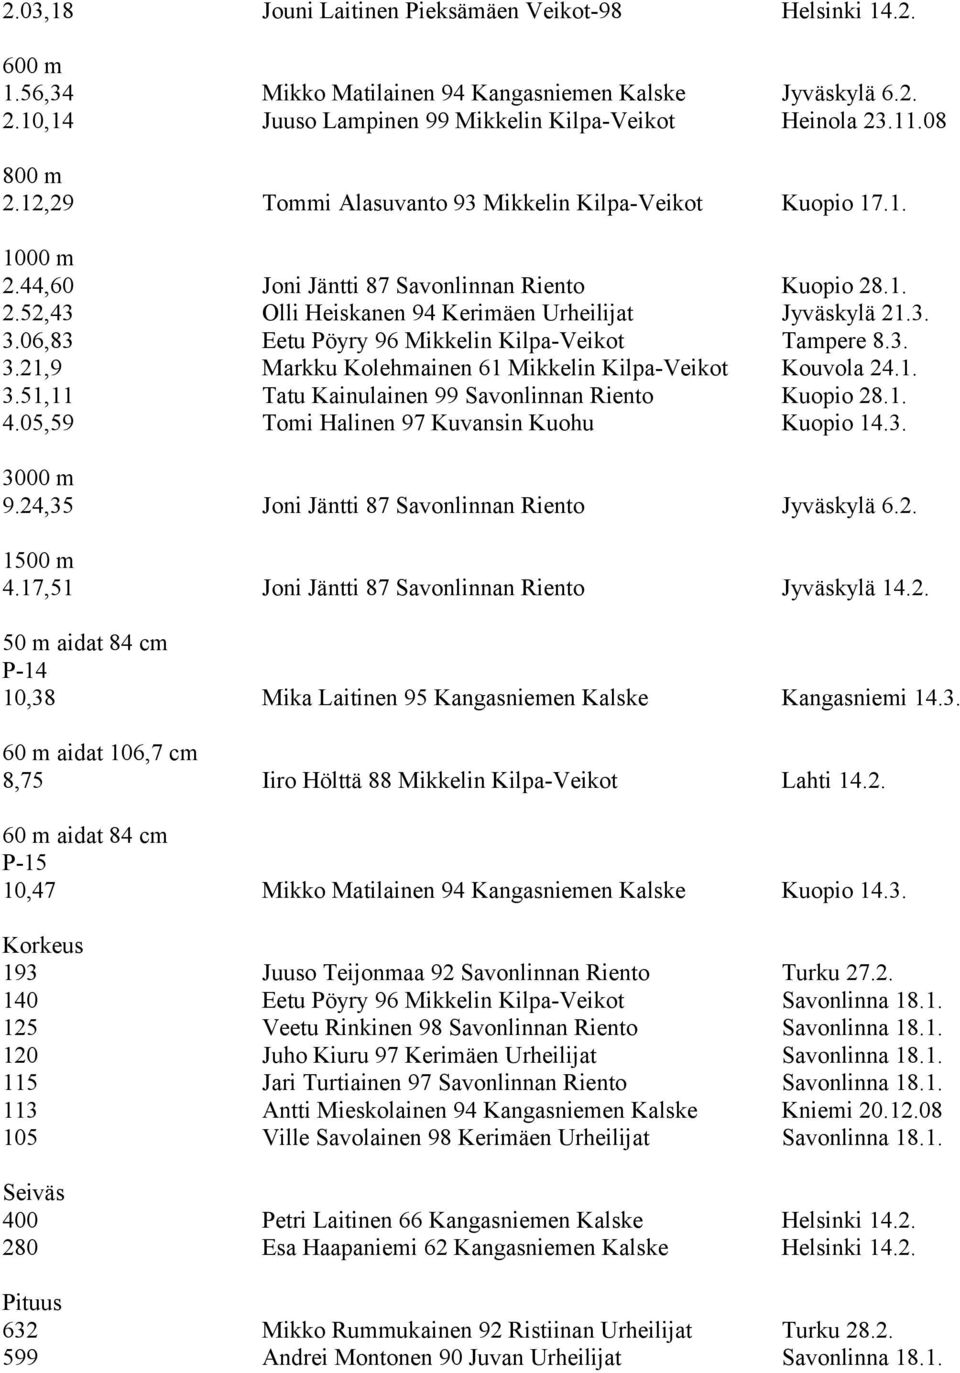 06,83 Eetu Pöyry 96 Mikkelin Kilpa-Veikot Tampere 8.3. 3.21,9 Markku Kolehmainen 61 Mikkelin Kilpa-Veikot Kouvola 24.1. 3.51,11 Tatu Kainulainen 99 Savonlinnan Riento Kuopio 28.1. 4.